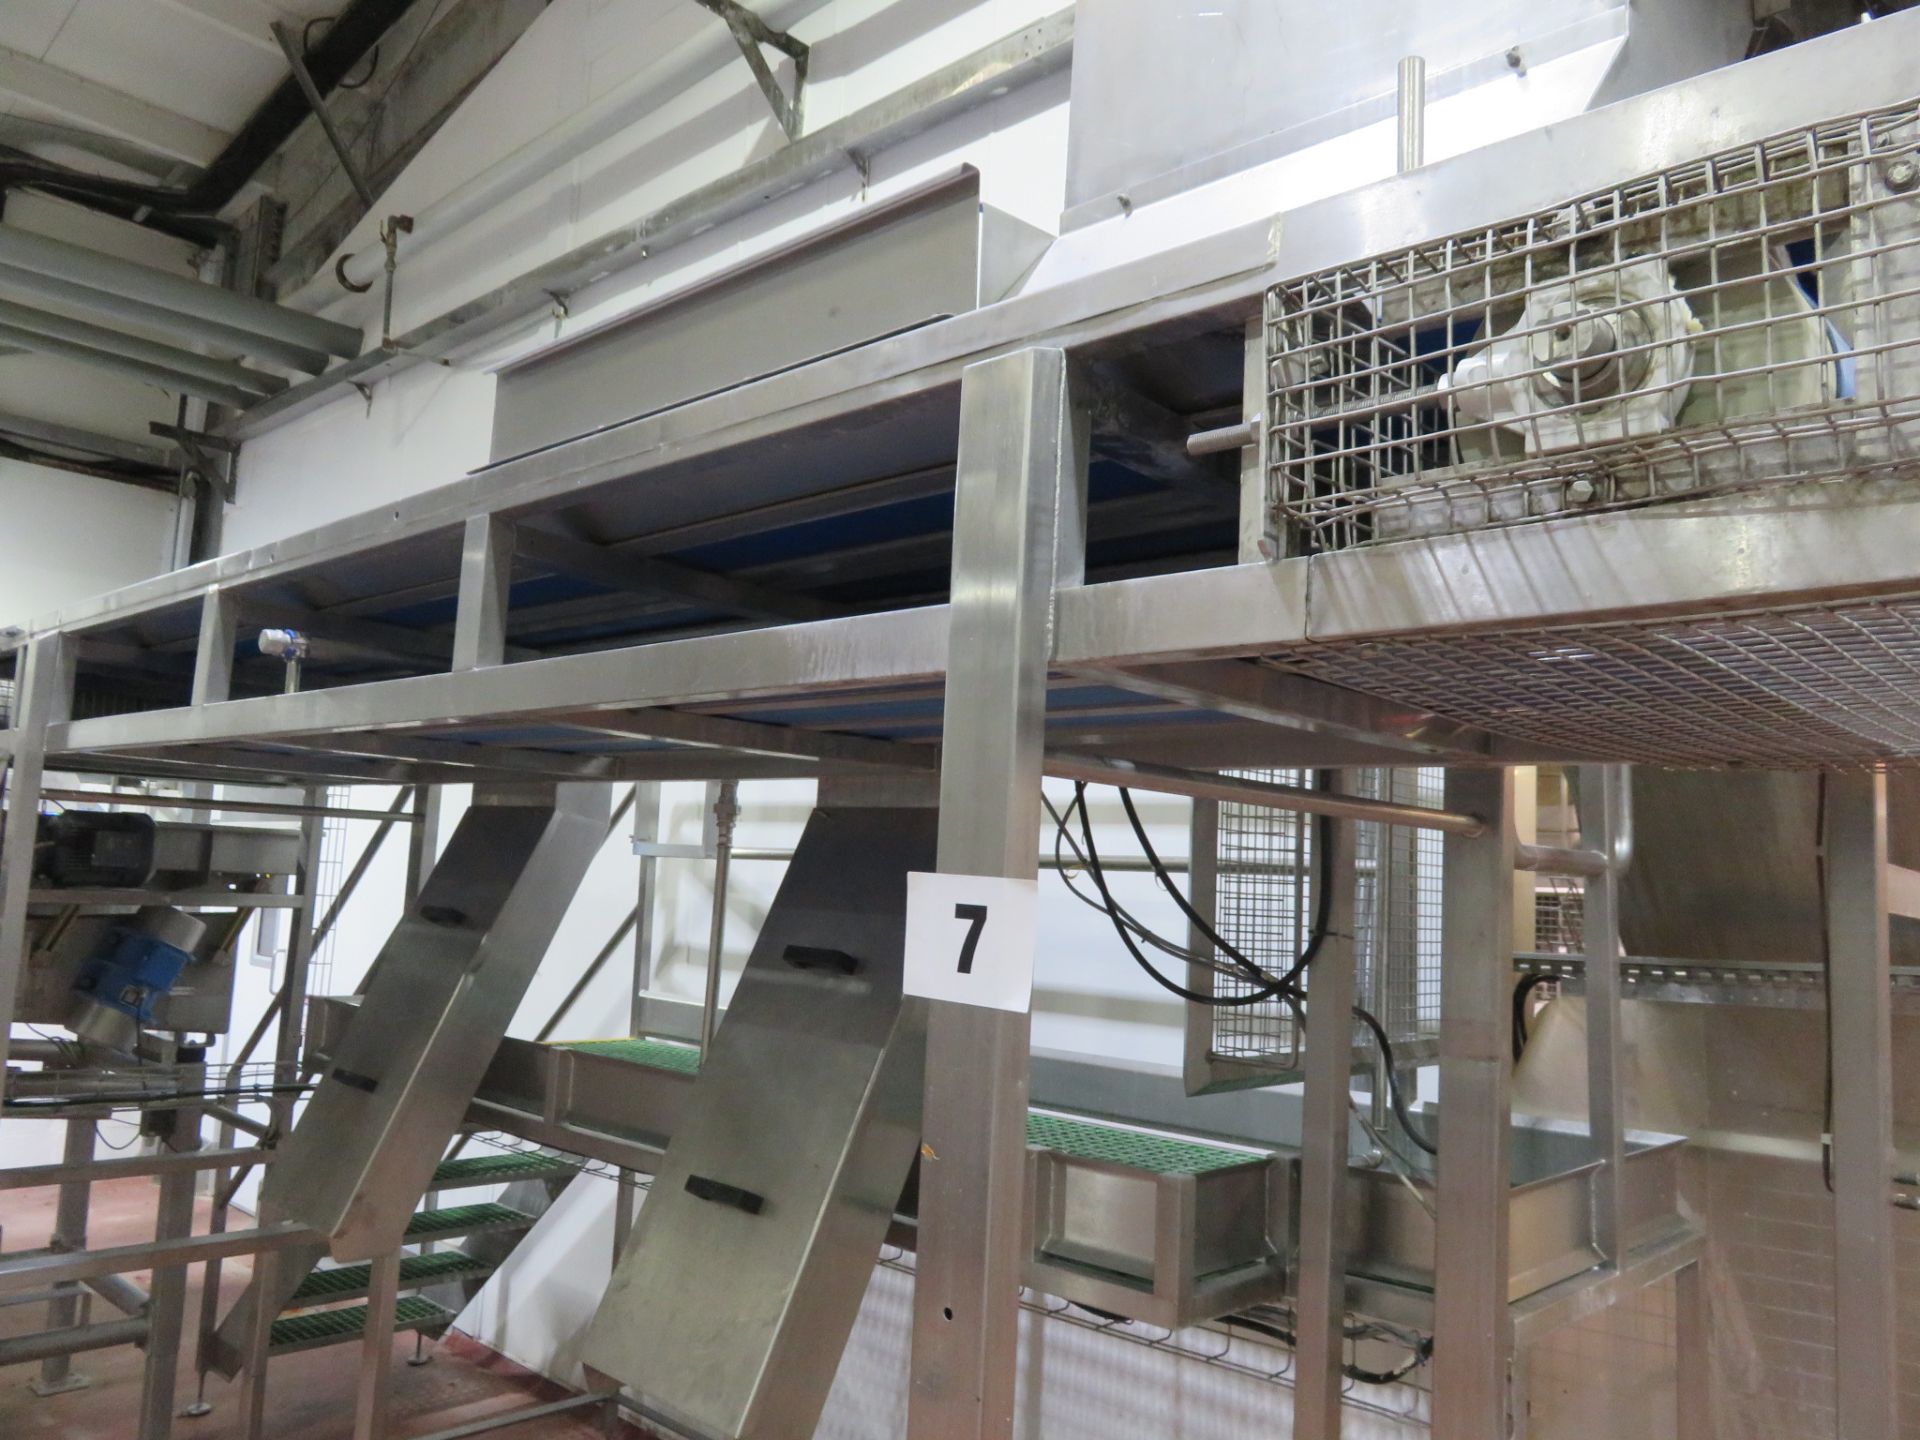 Conveyor approx. 4.3 meters long x 600mm wide belt. Height to conveyor approx. 2.2 meters. LO £240 - Bild 3 aus 5